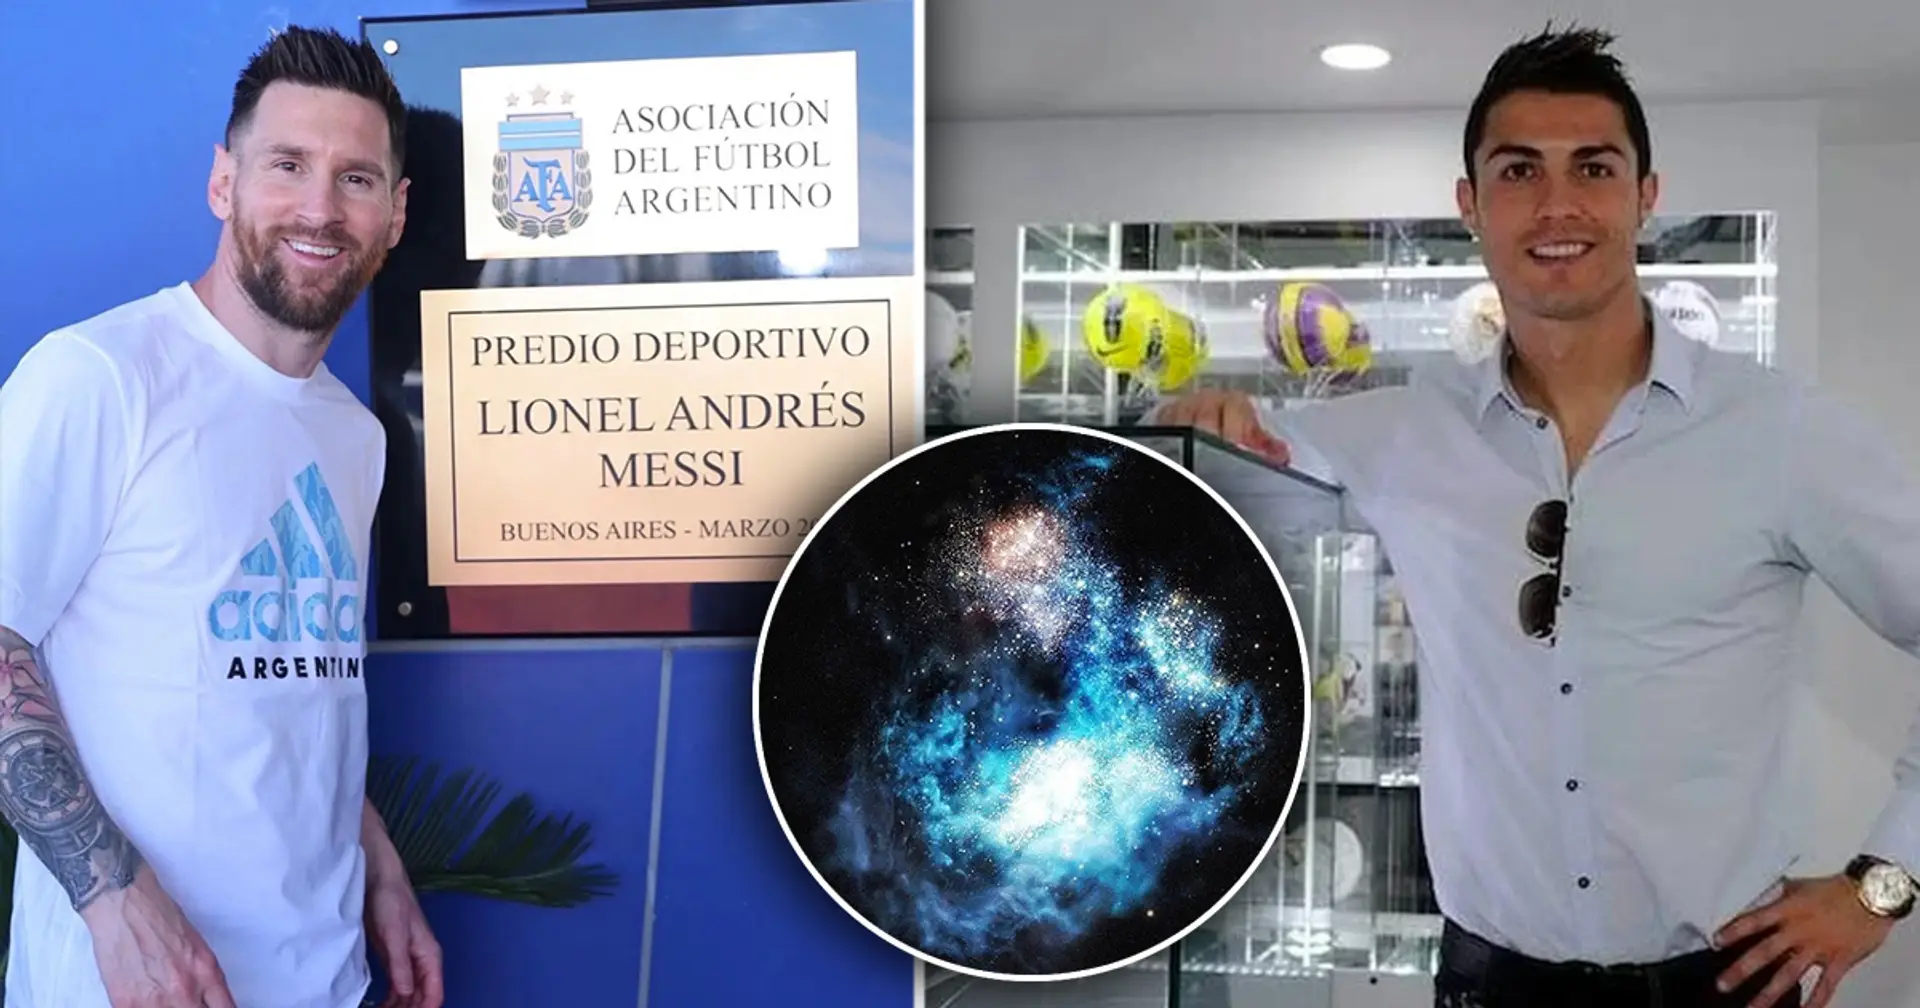 Messi finalmente tiene una cosa que lleva su nombre. Cristiano ya tiene 4, incluyendo toda una galaxia